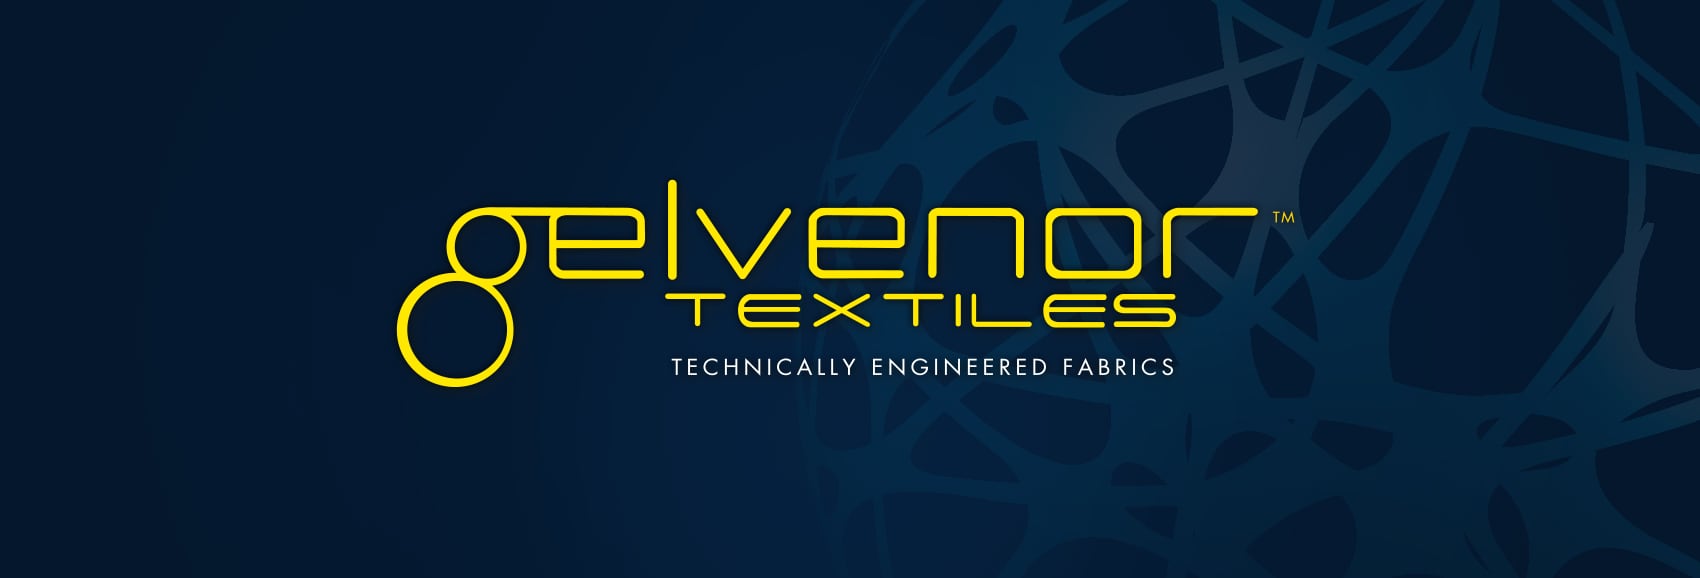 Gelvenor-Textiles-logo